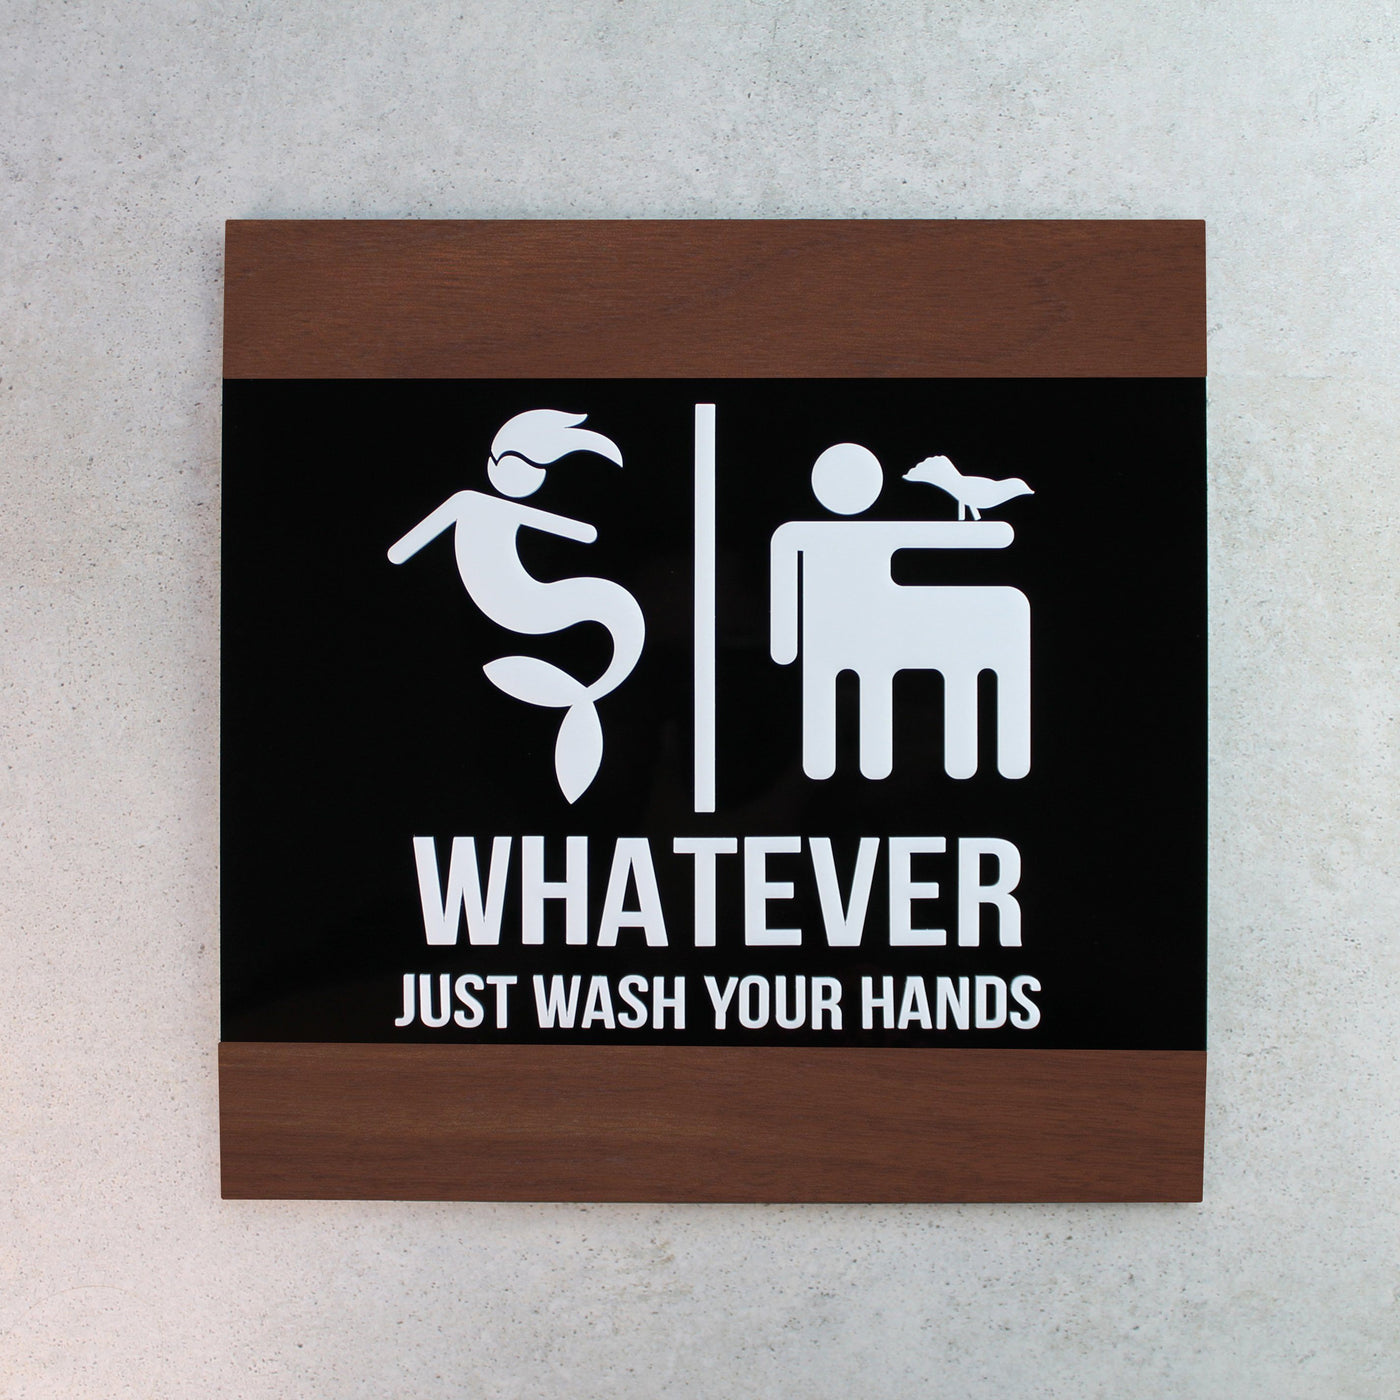 Funny All Gender Restroom Sign "Buro" Design